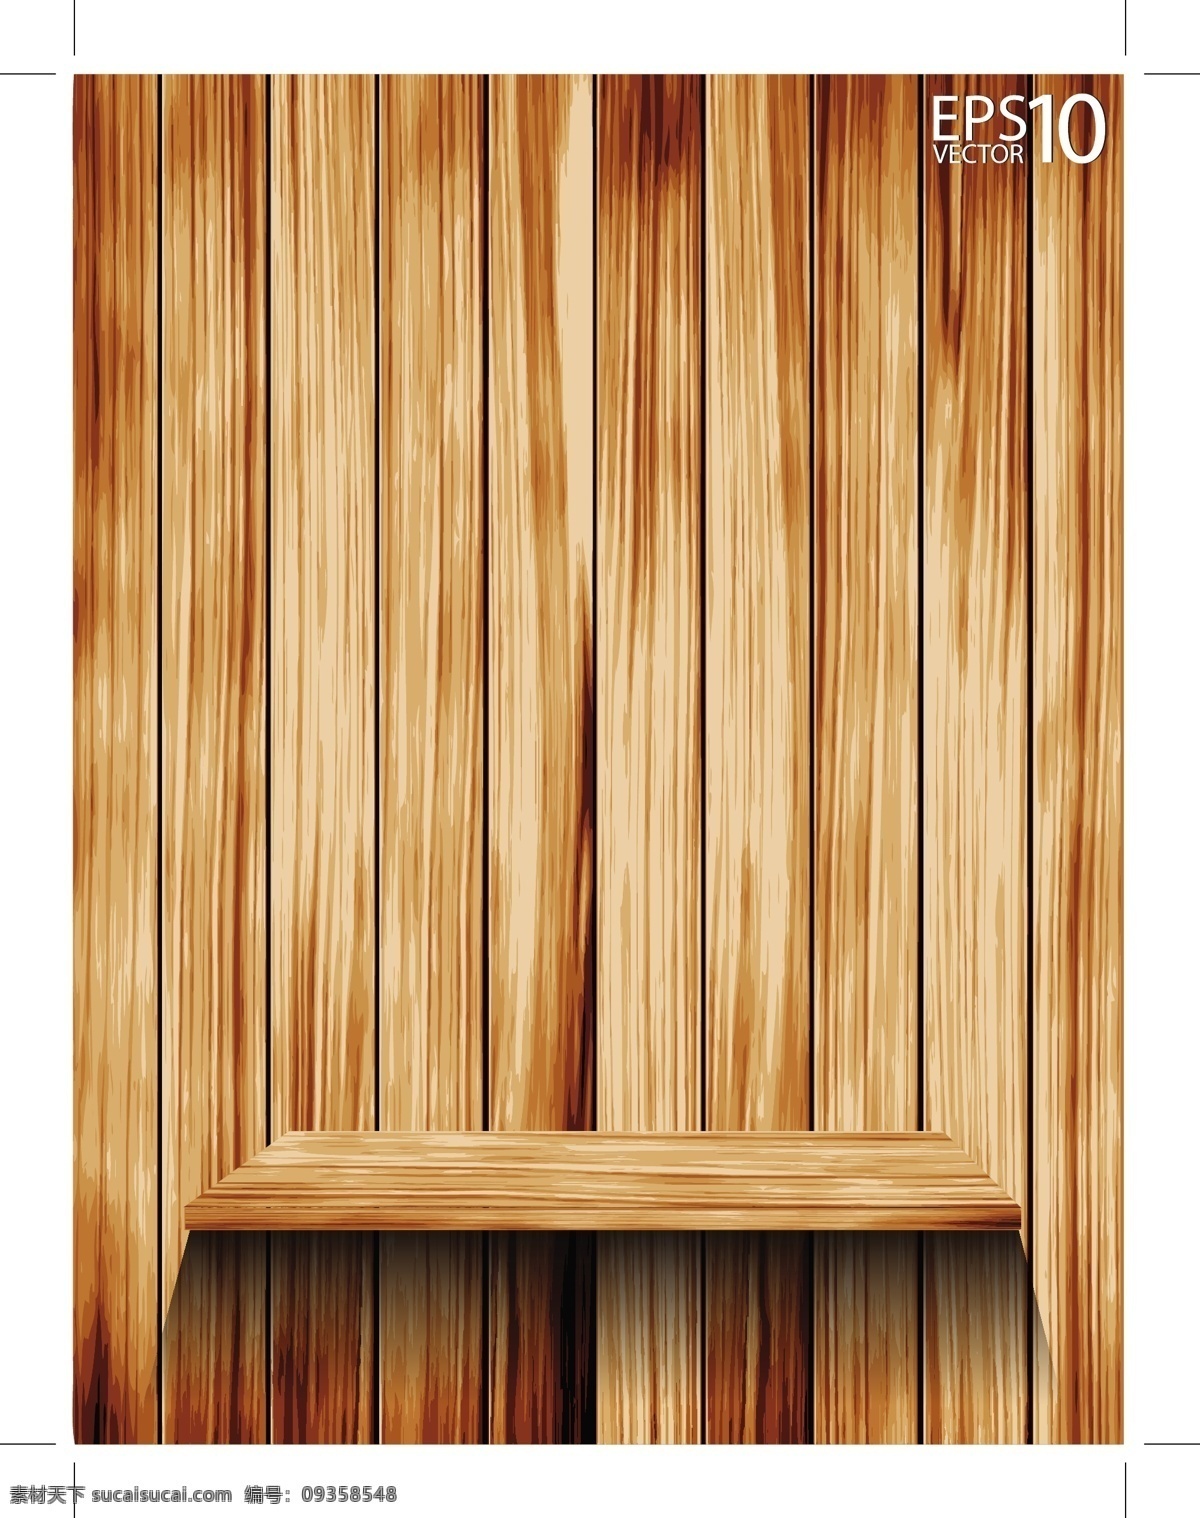 木板 木纹 彩色木板 木质纹理 wood 手绘木板 逼真木板 背景底纹 矢量 底纹边框